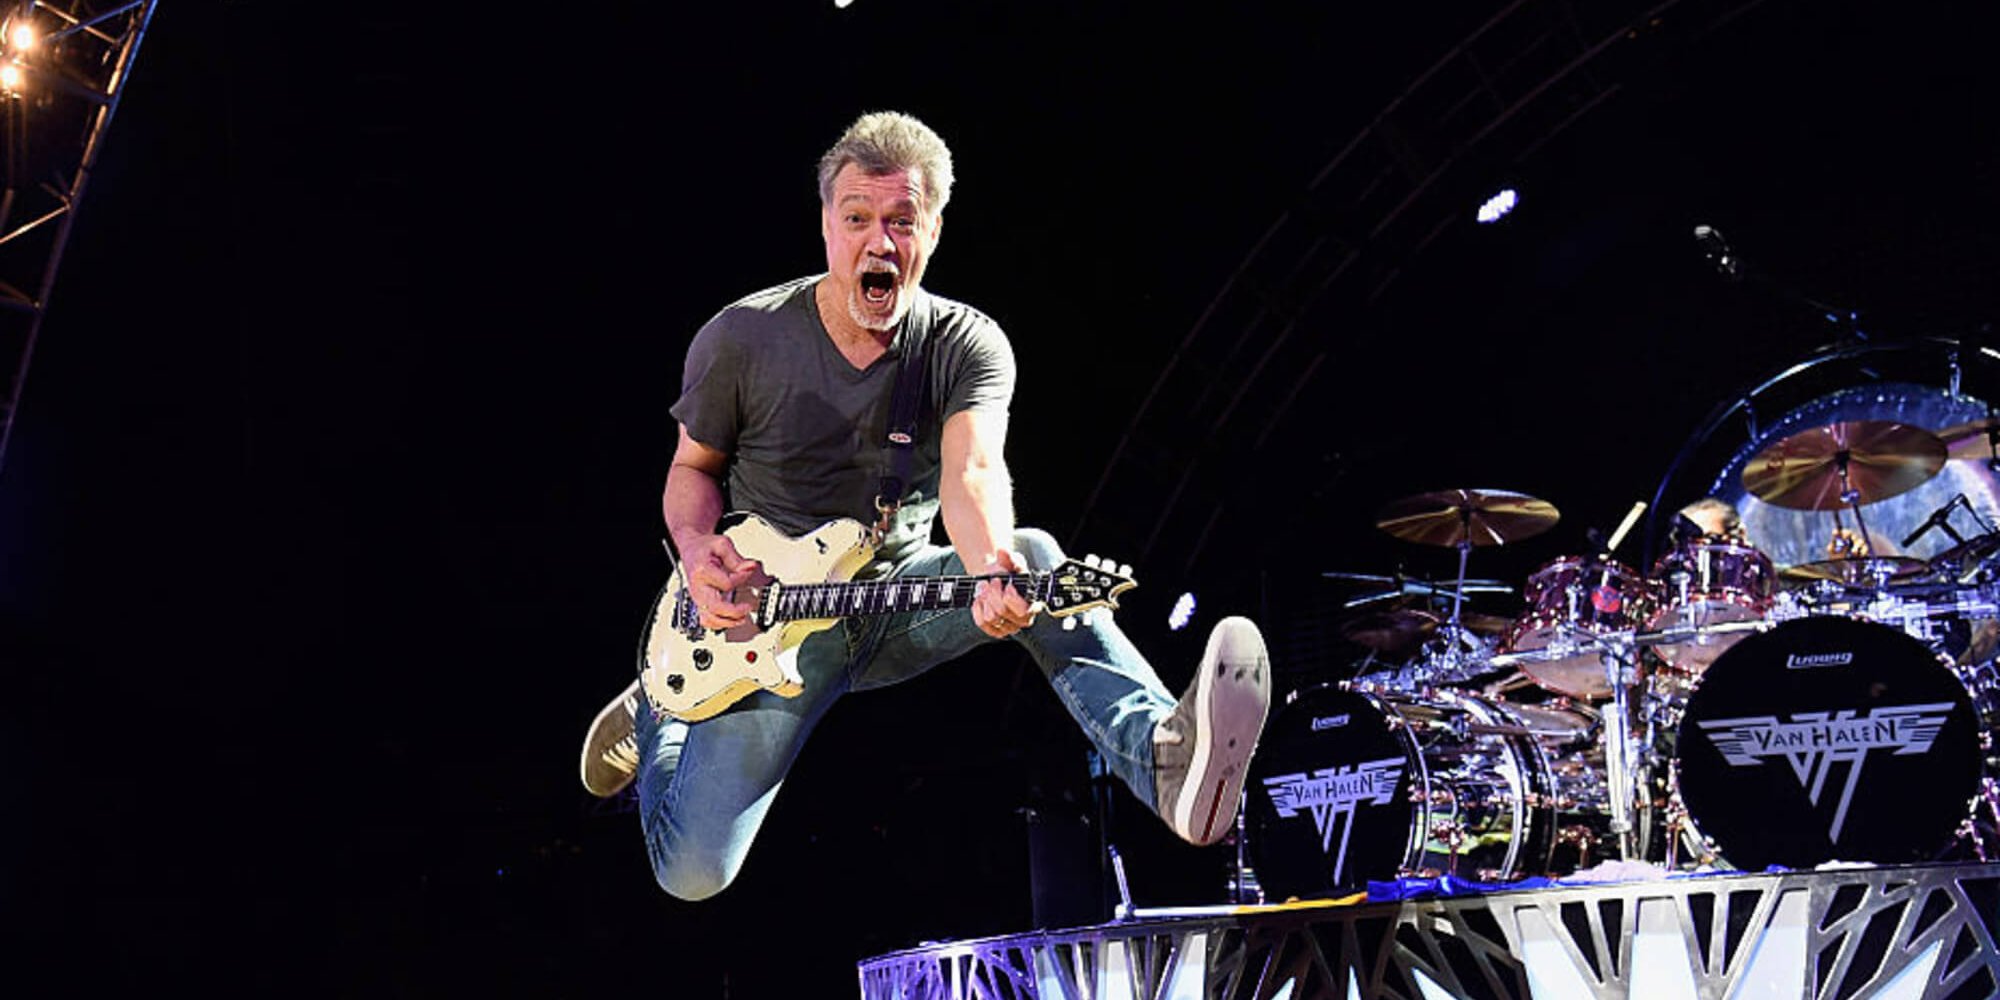 La despedida: los héroes de la guitarra y el adiós a Eddie Van Halen